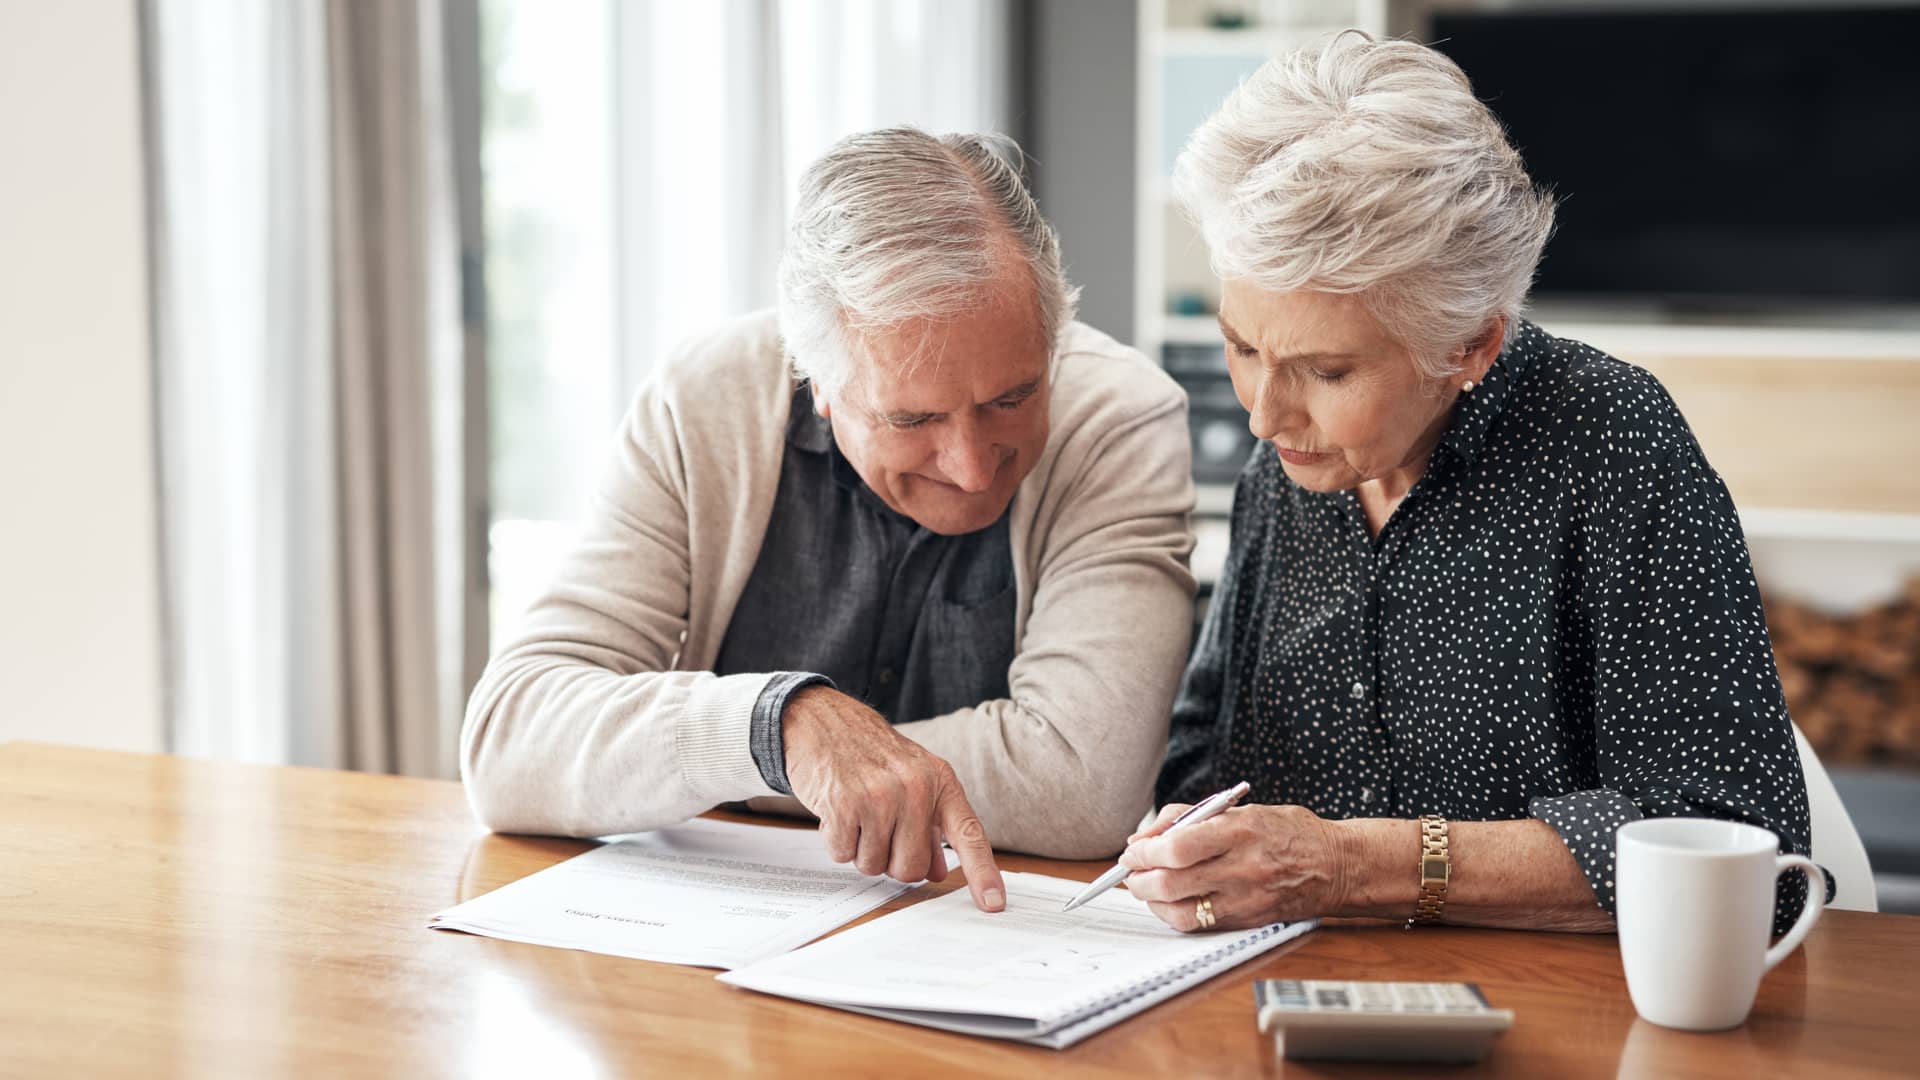 Una pareja de ancianos repasa su factura del seguro para comprobar que posibles subidas ha podido haber en su seguro de salud